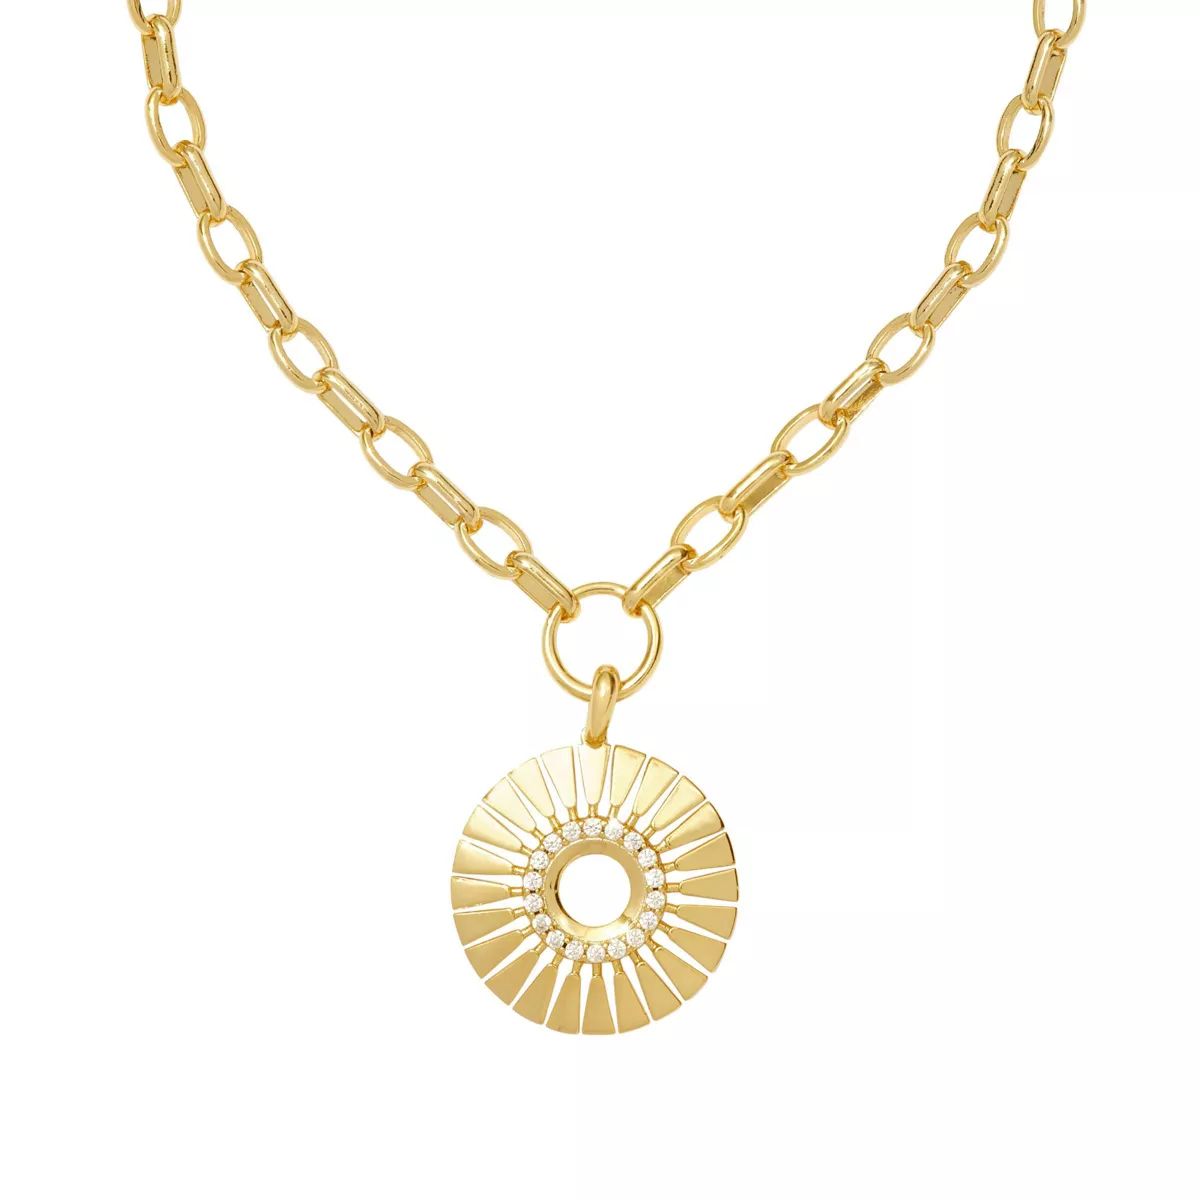 Kendra Scott Hattie Chain Necklace - Gold | Target